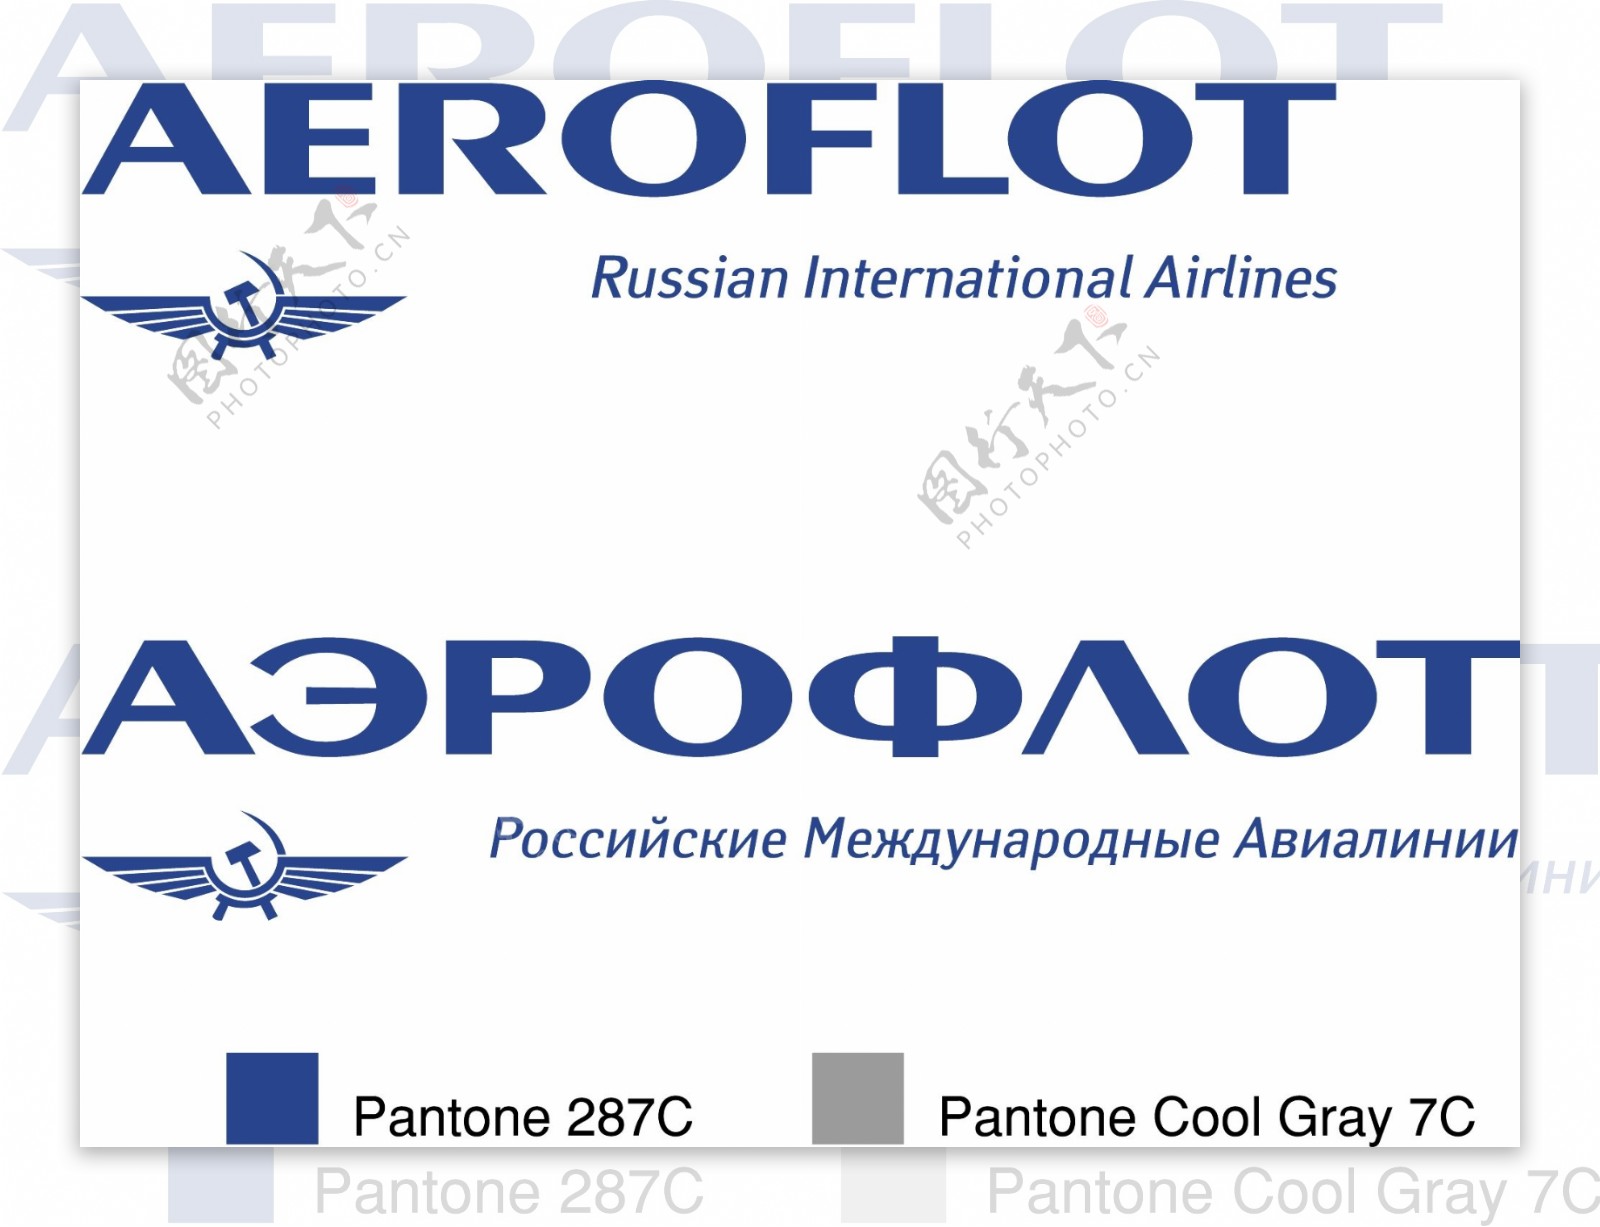 俄罗斯航空公司的标识